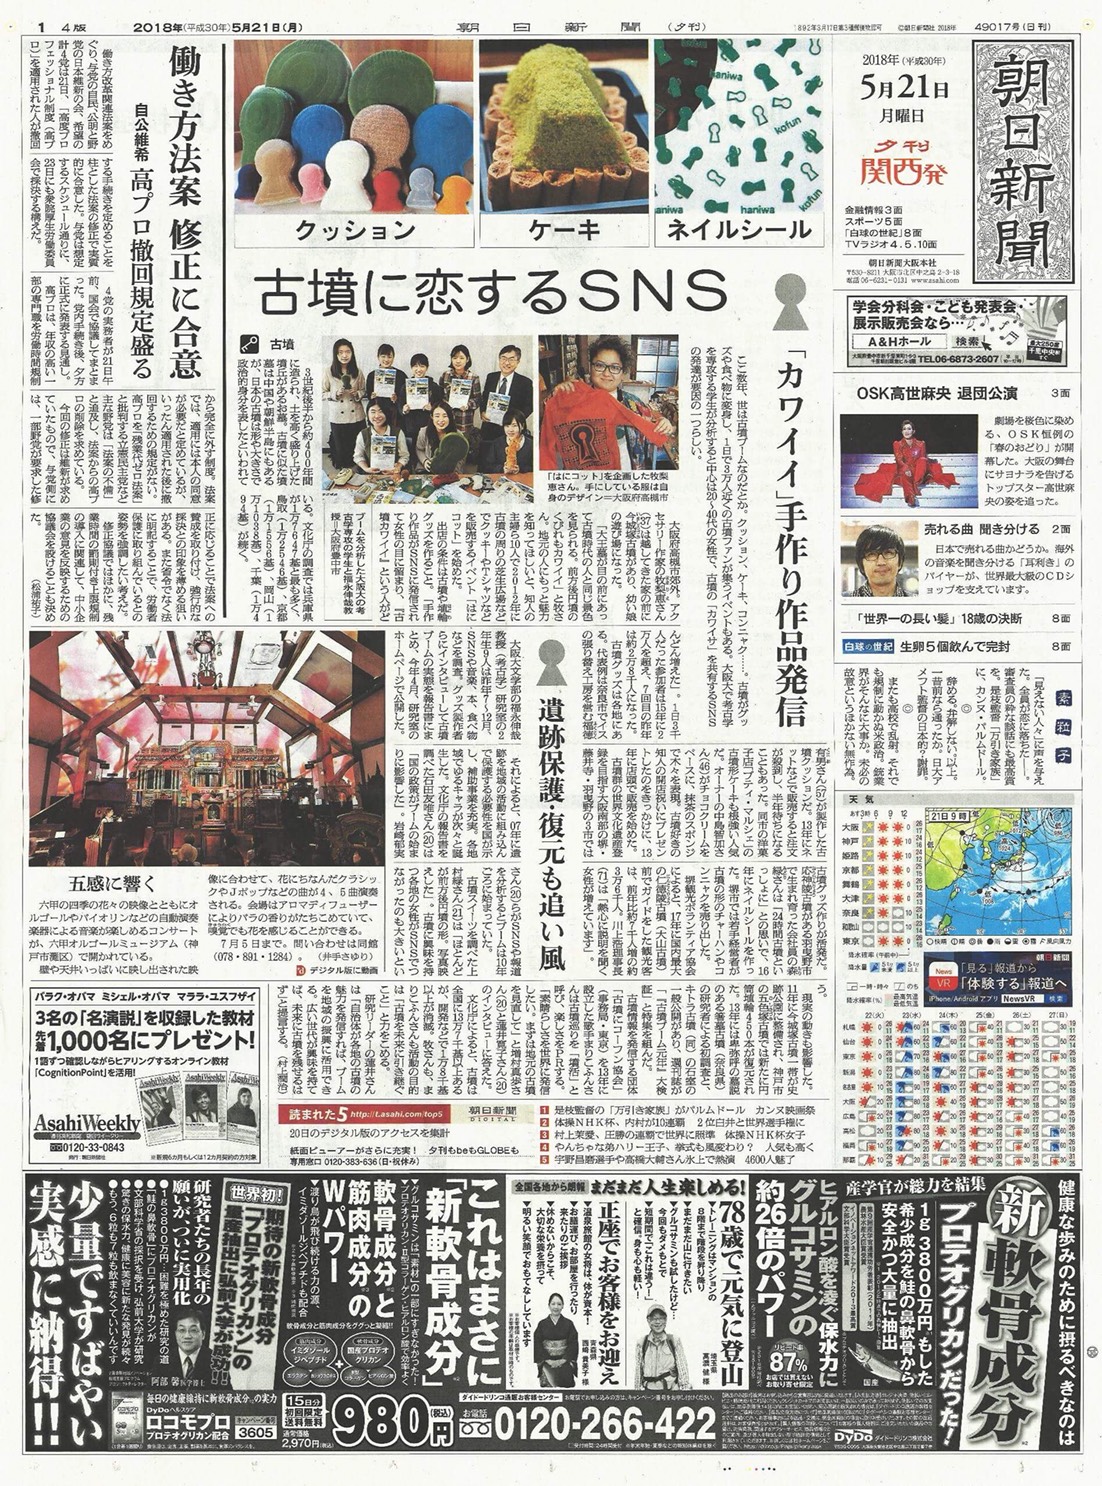 朝日新聞（5/21付け夕刊）に「古墳に恋するSNS」の記事に掲載されまし